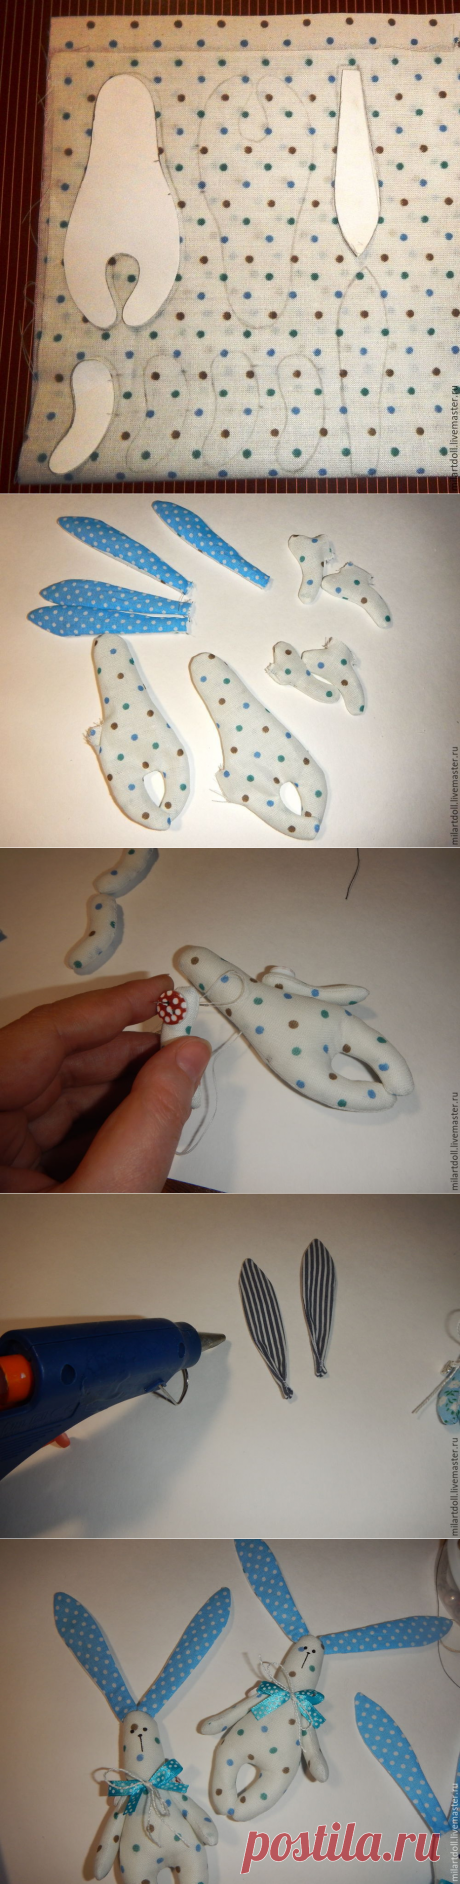 Как сшить игрушку «Зая» для куклы - Ярмарка Мастеров - ручная работа, handmade